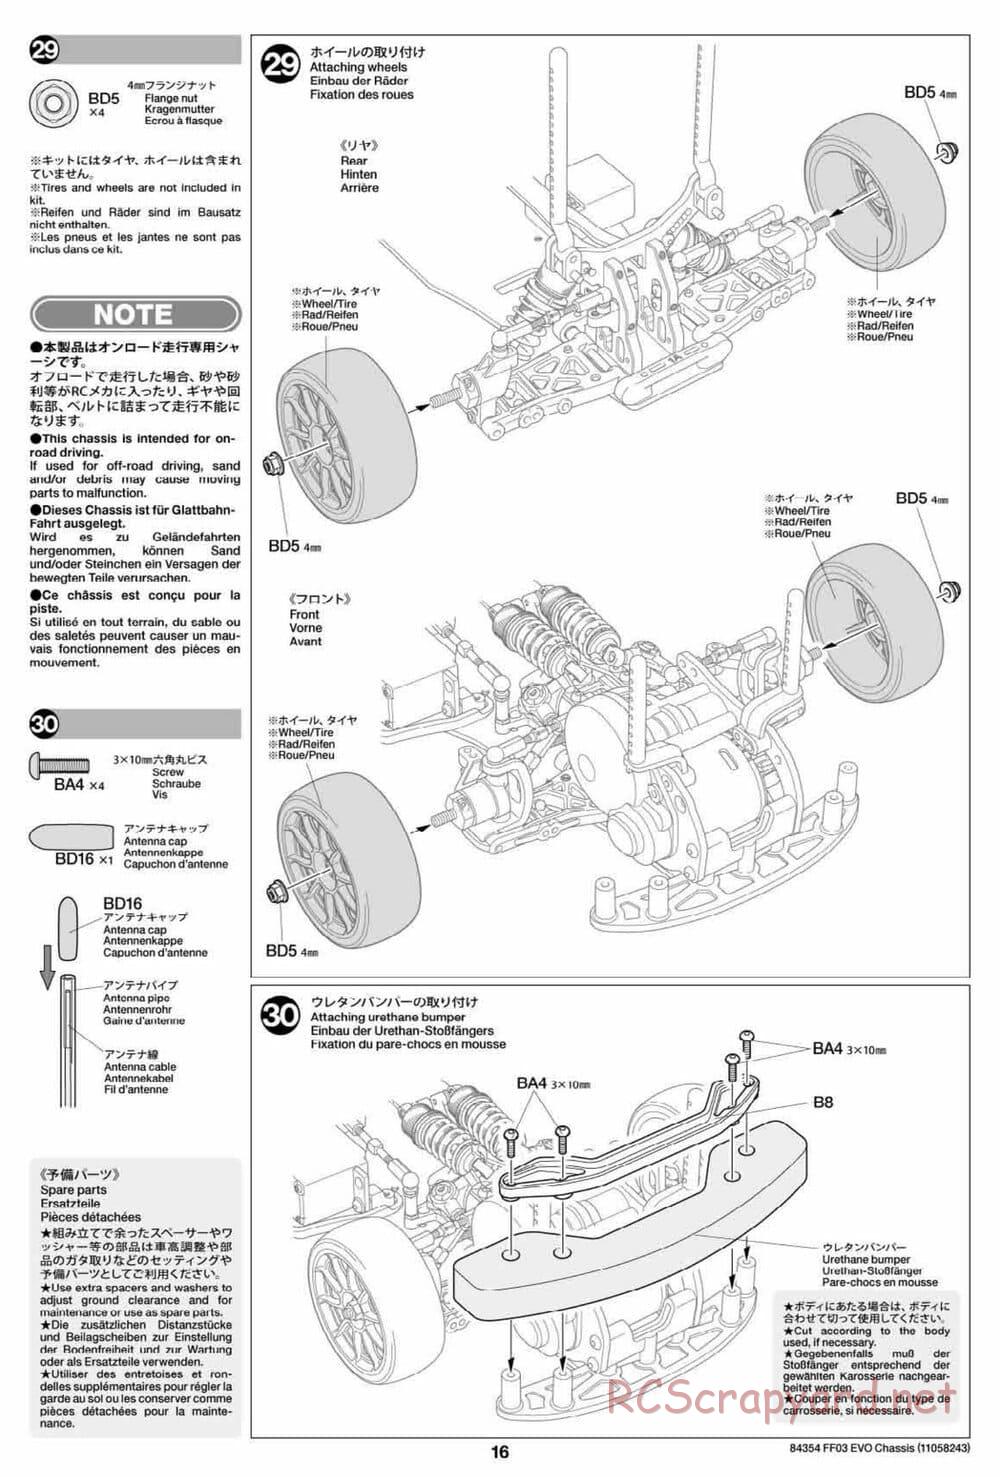 Tamiya - FF-03 Evo Chassis - Manual - Page 16